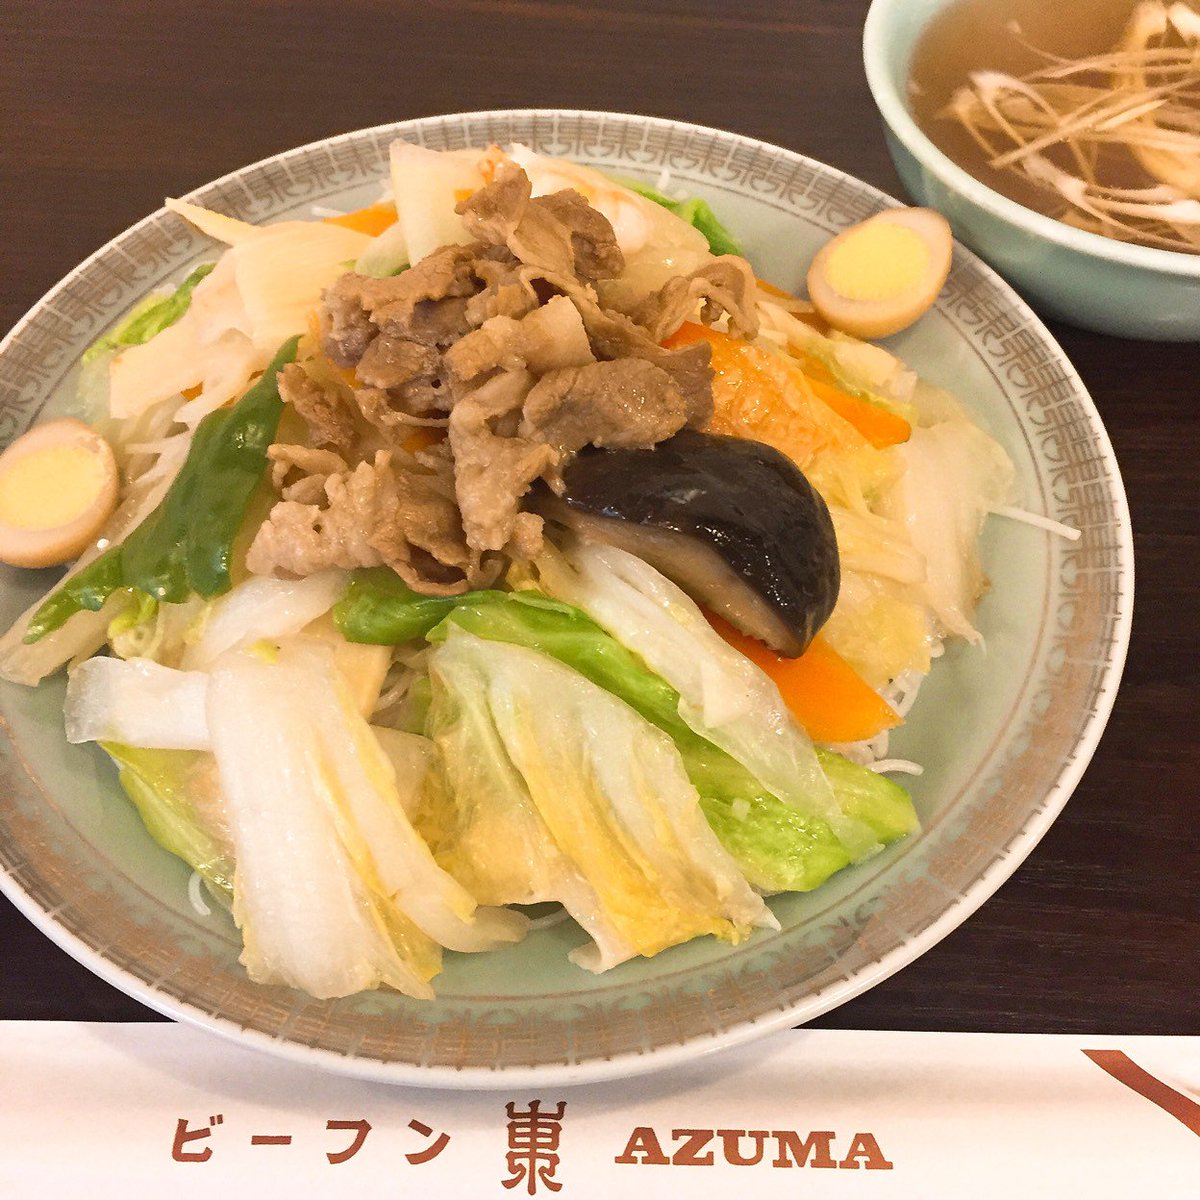 ミイル 日本人の舌に一番合う 台湾料理 東京の人気台湾料理おすすめ最新ランキング T Co Ql5dmjshqu ミイルまとめ 東京都 台湾料理